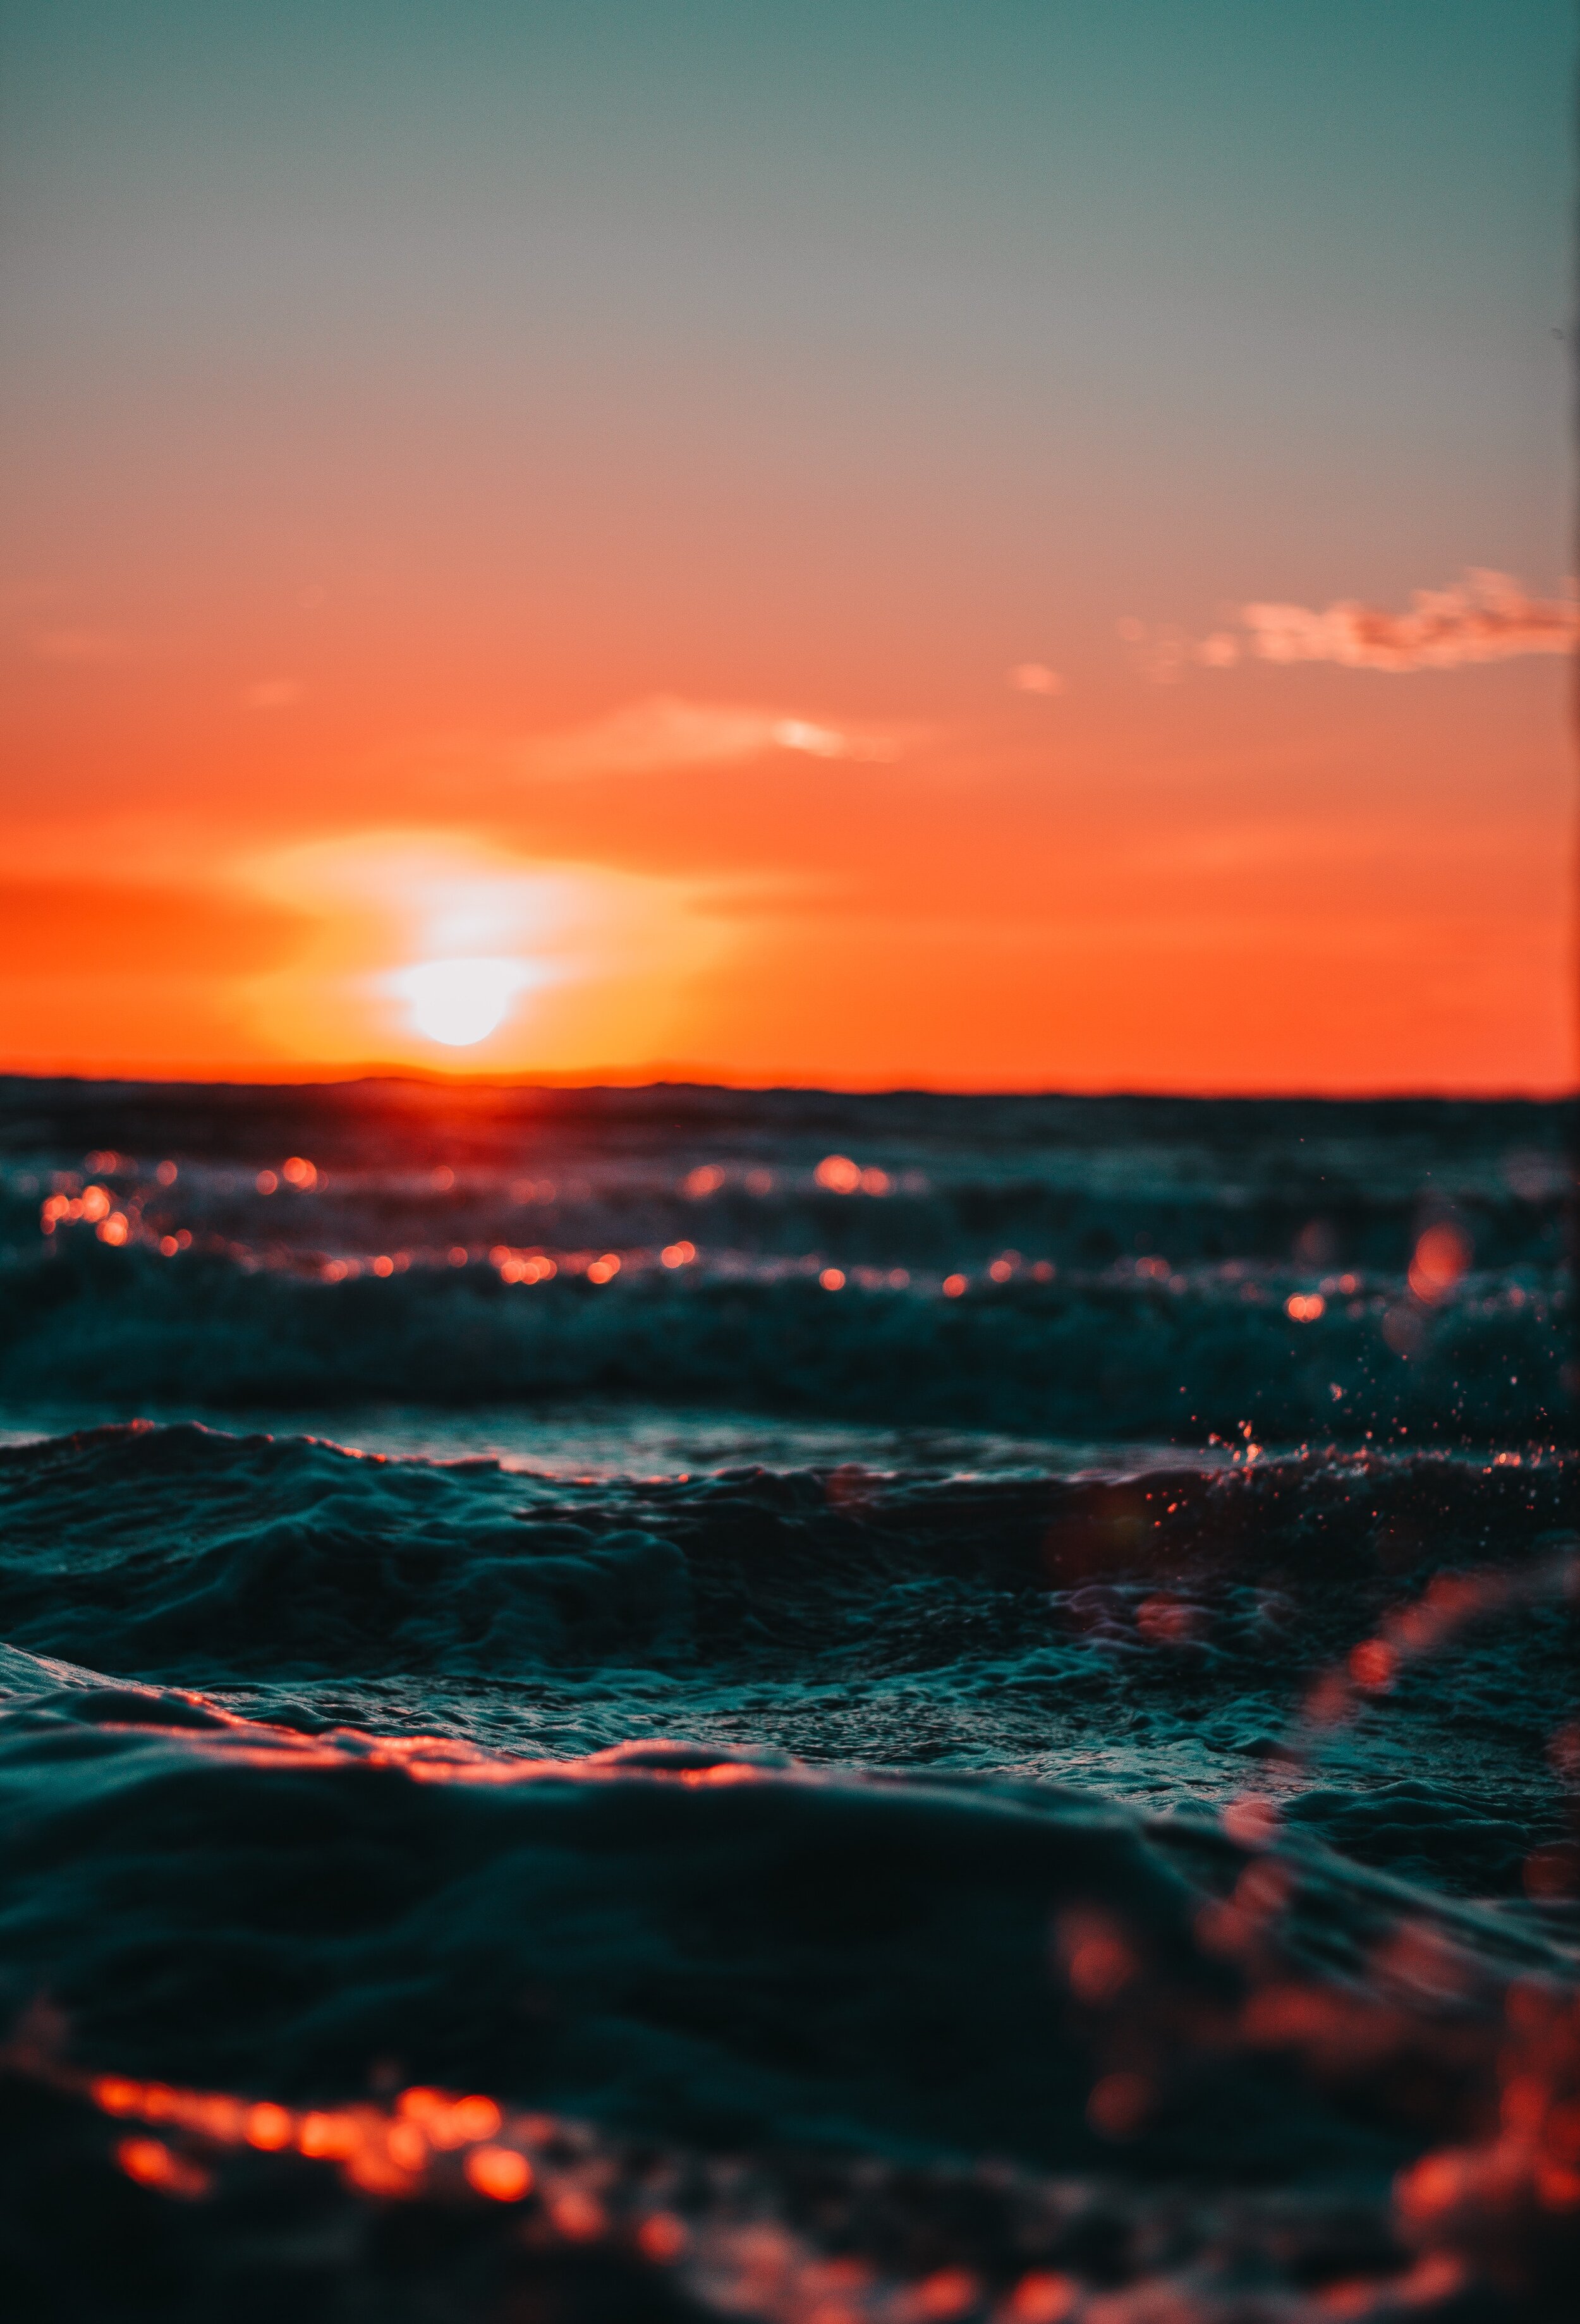 Hình nền sóng biển sẽ giúp bạn cảm nhận được sự thanh bình và mênh mông của đại dương. Với những hình ảnh sống động, bạn sẽ được truyền tải tới những cảm xúc đẹp nhất của mình và bắt đầu một ngày mới tràn đầy năng lượng.